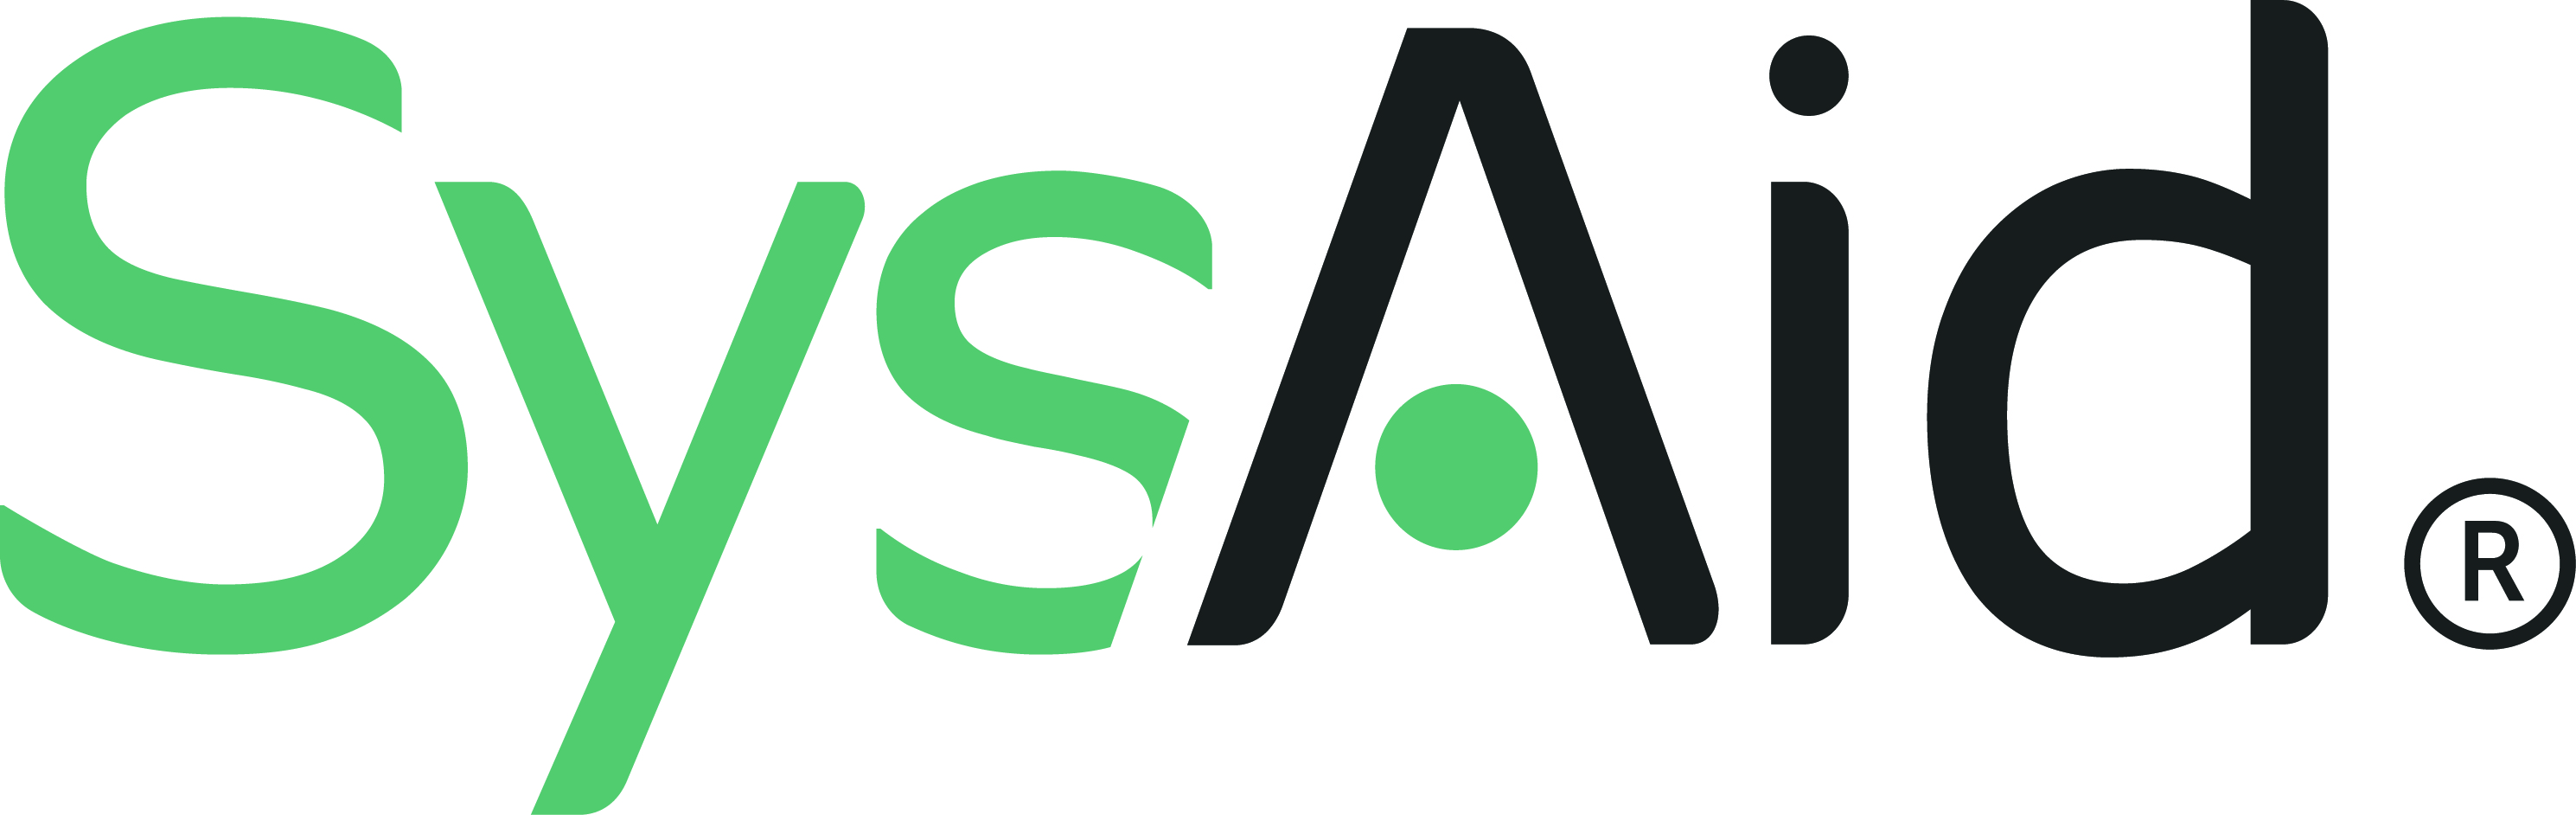 SysAid logo